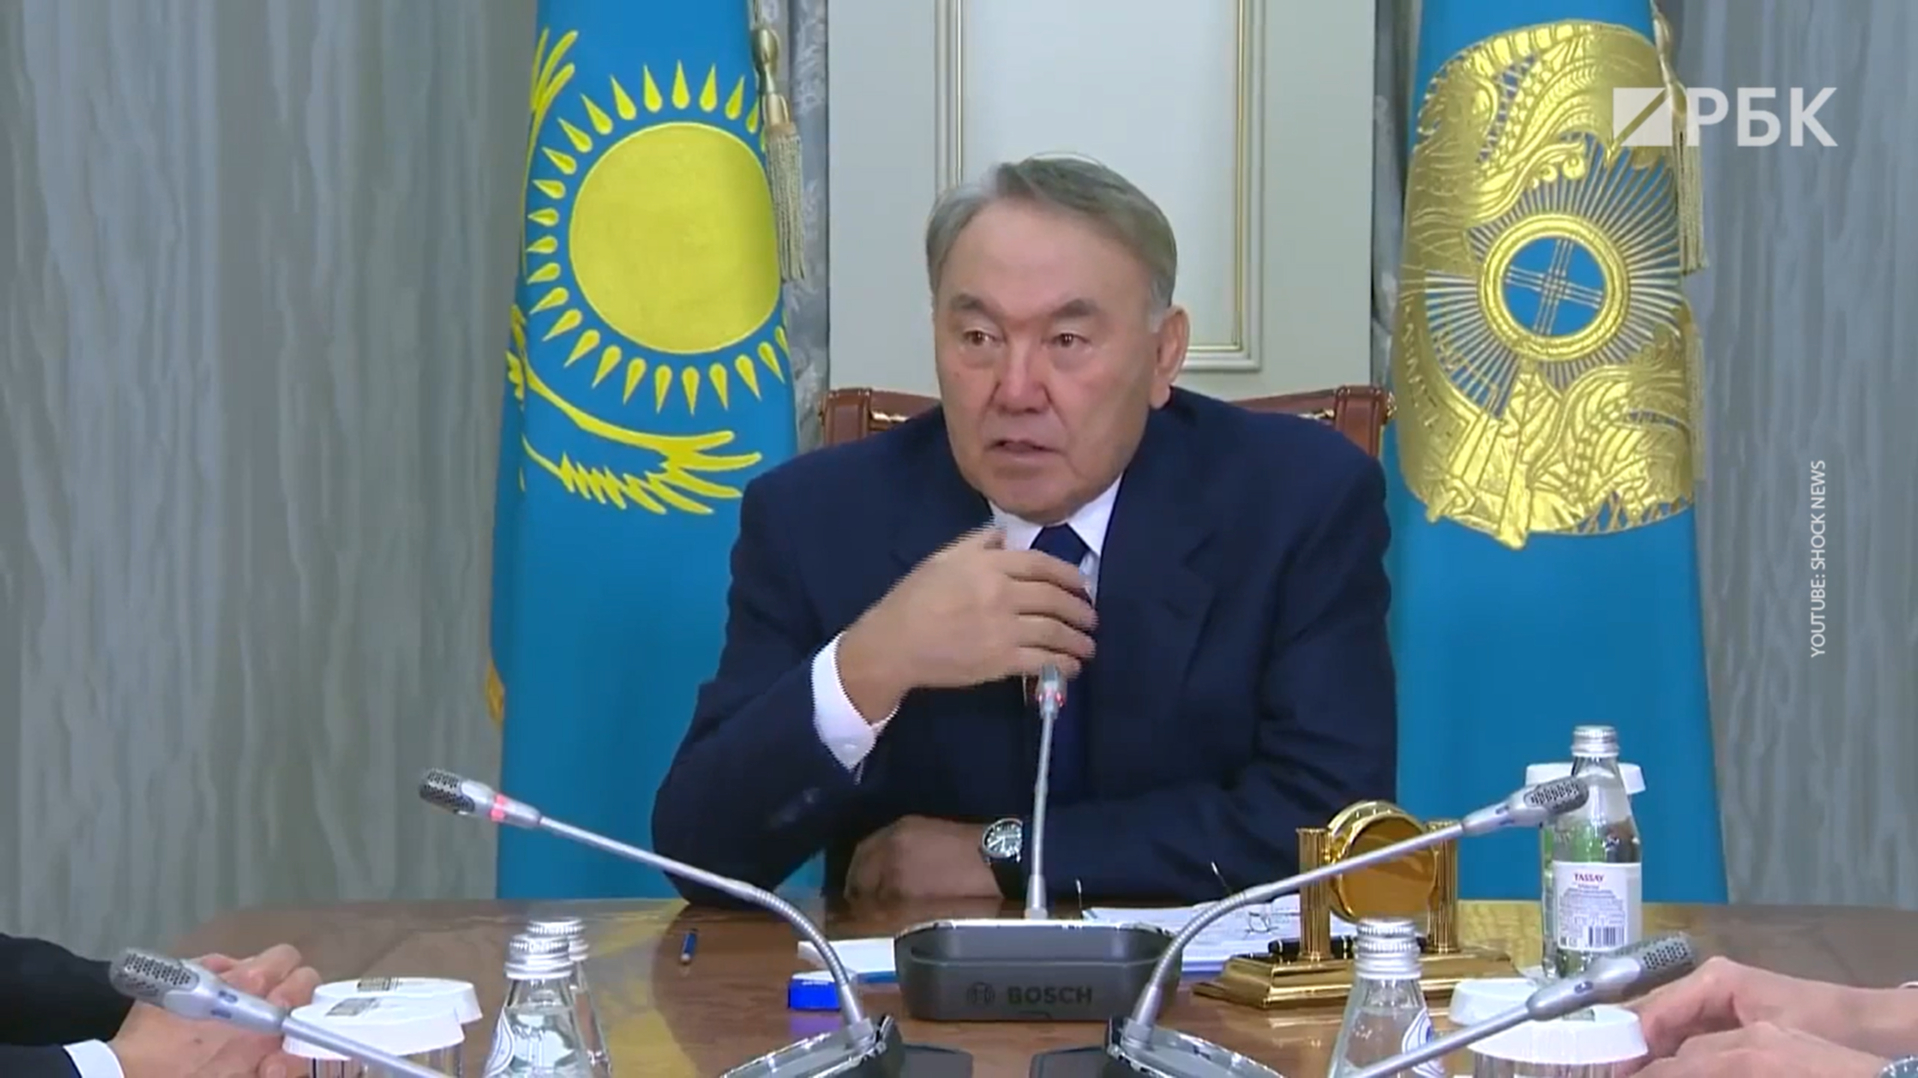 Зятя Назарбаева снова выдвинули в совет директоров «Газпрома»"/>













